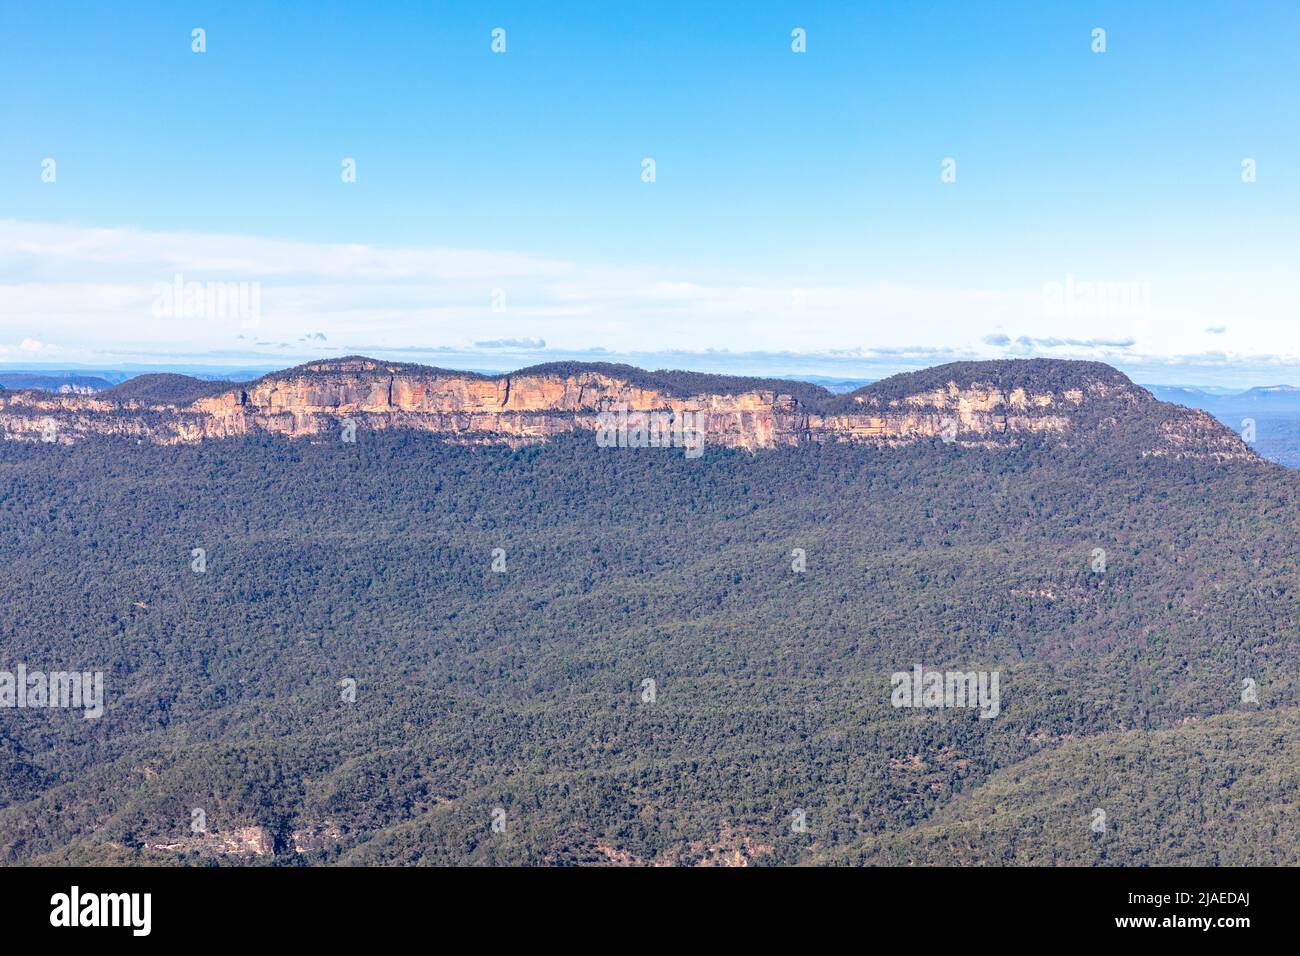 Jamison Valley en la zona del patrimonio mundial de las Montañas Azules, Mount Solitary y Mount Gibraltar, cadena montañosa de arenisca, NSW, Australai Foto de stock